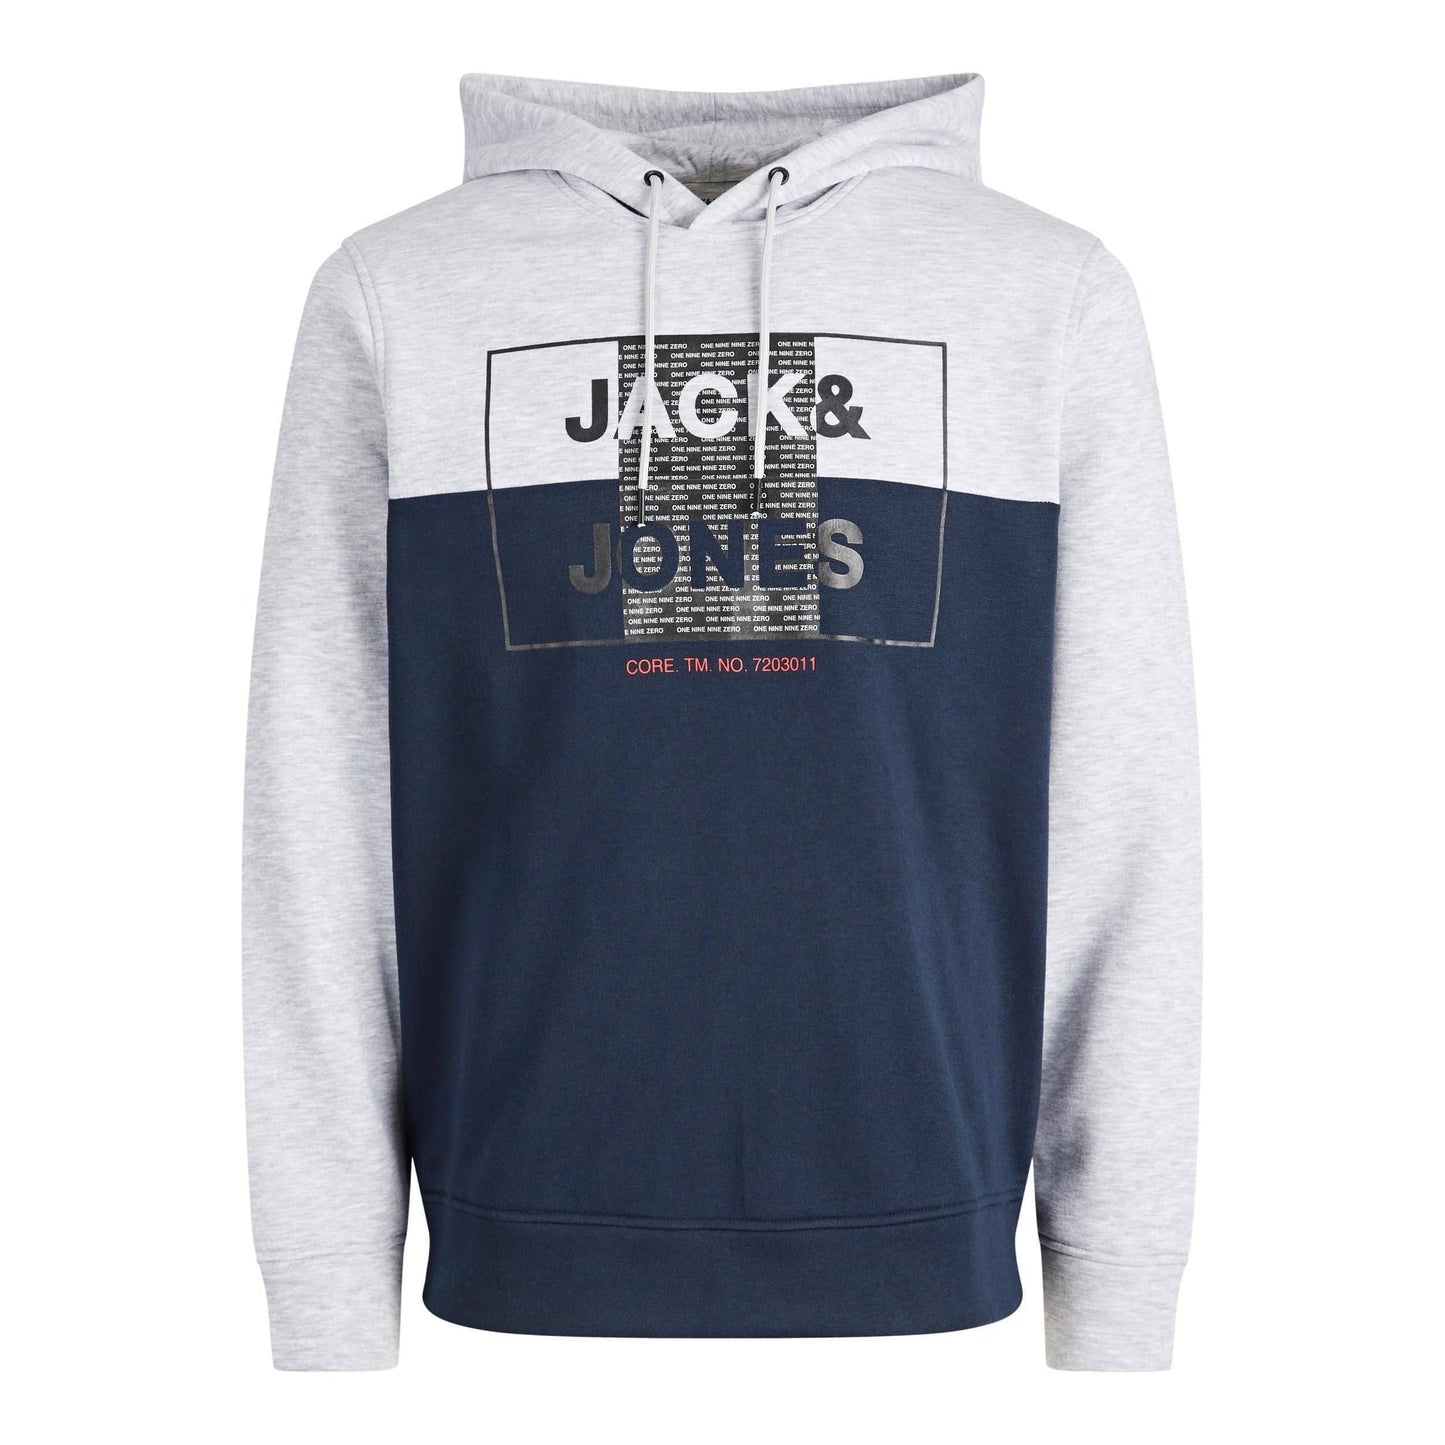 JACK & JONES vyriškas mėlynas džemperis CORE